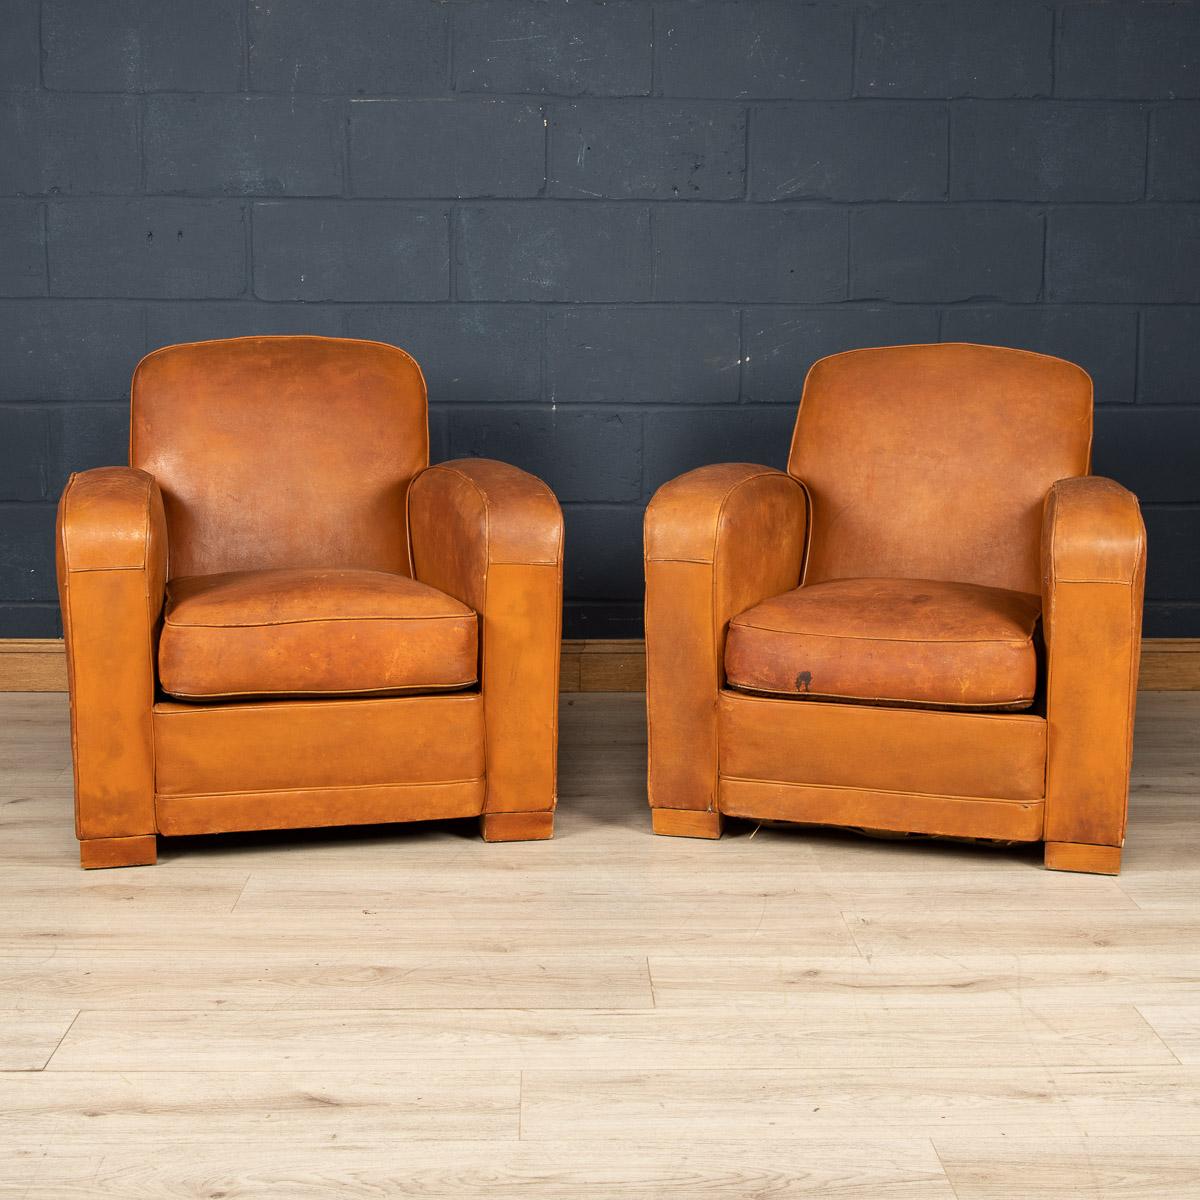 Une superbe paire de fauteuils club en cuir français, vers 1950. Ces fauteuils ont toujours respiré la classe et la sophistication, depuis le jour où ils ont été fabriqués au milieu du XXe siècle jusqu'à aujourd'hui. Il s'agit du modèle Art déco,